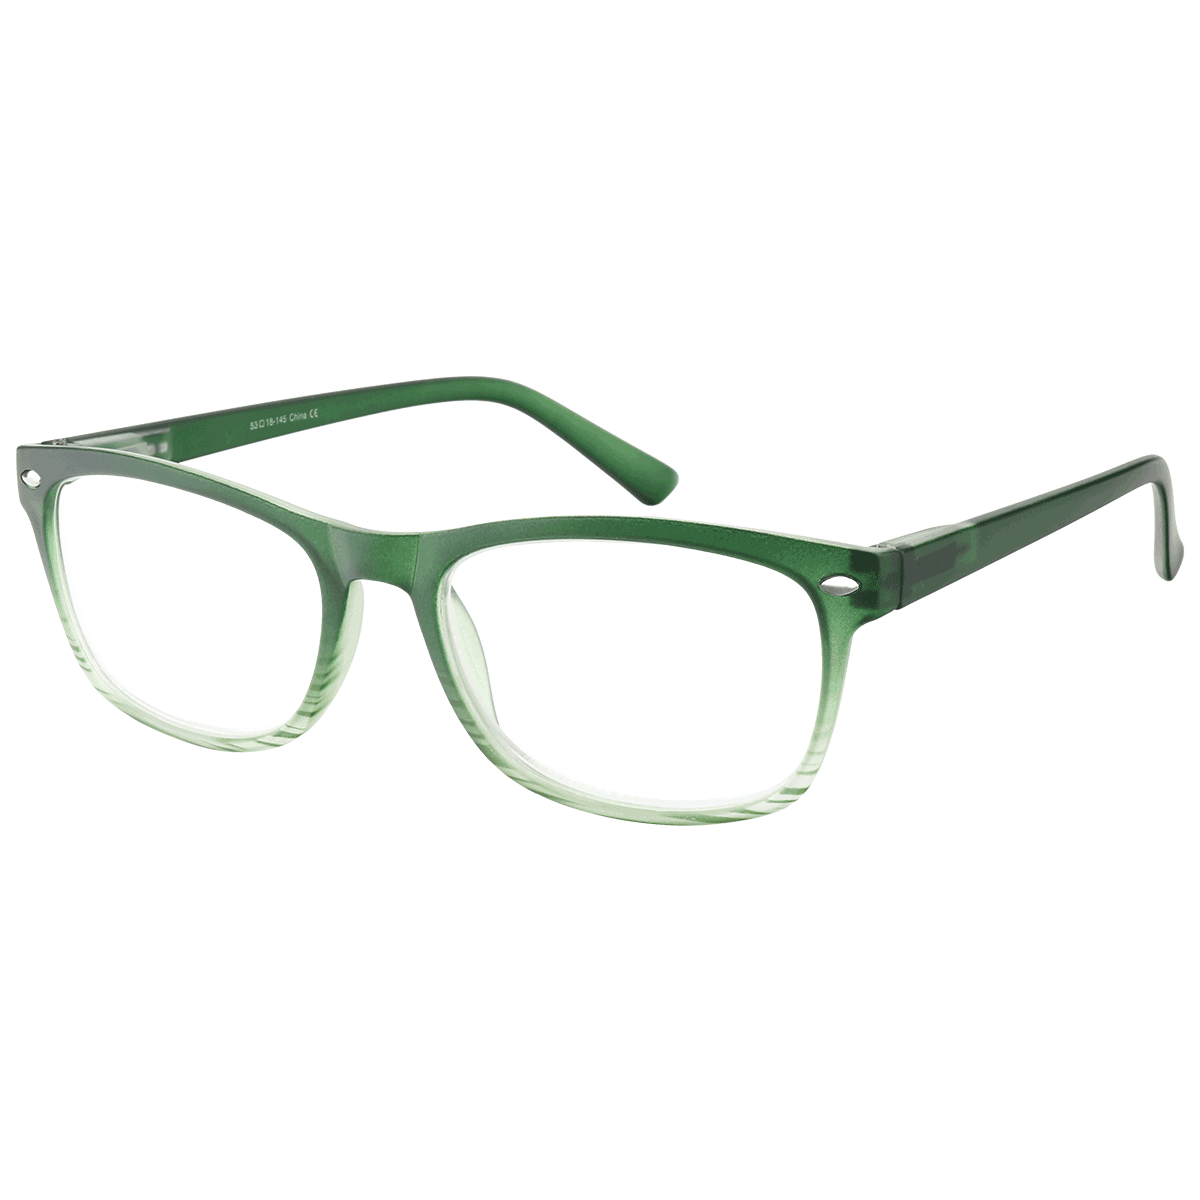 Bias - Square Green Reading Glasses for Men & Women